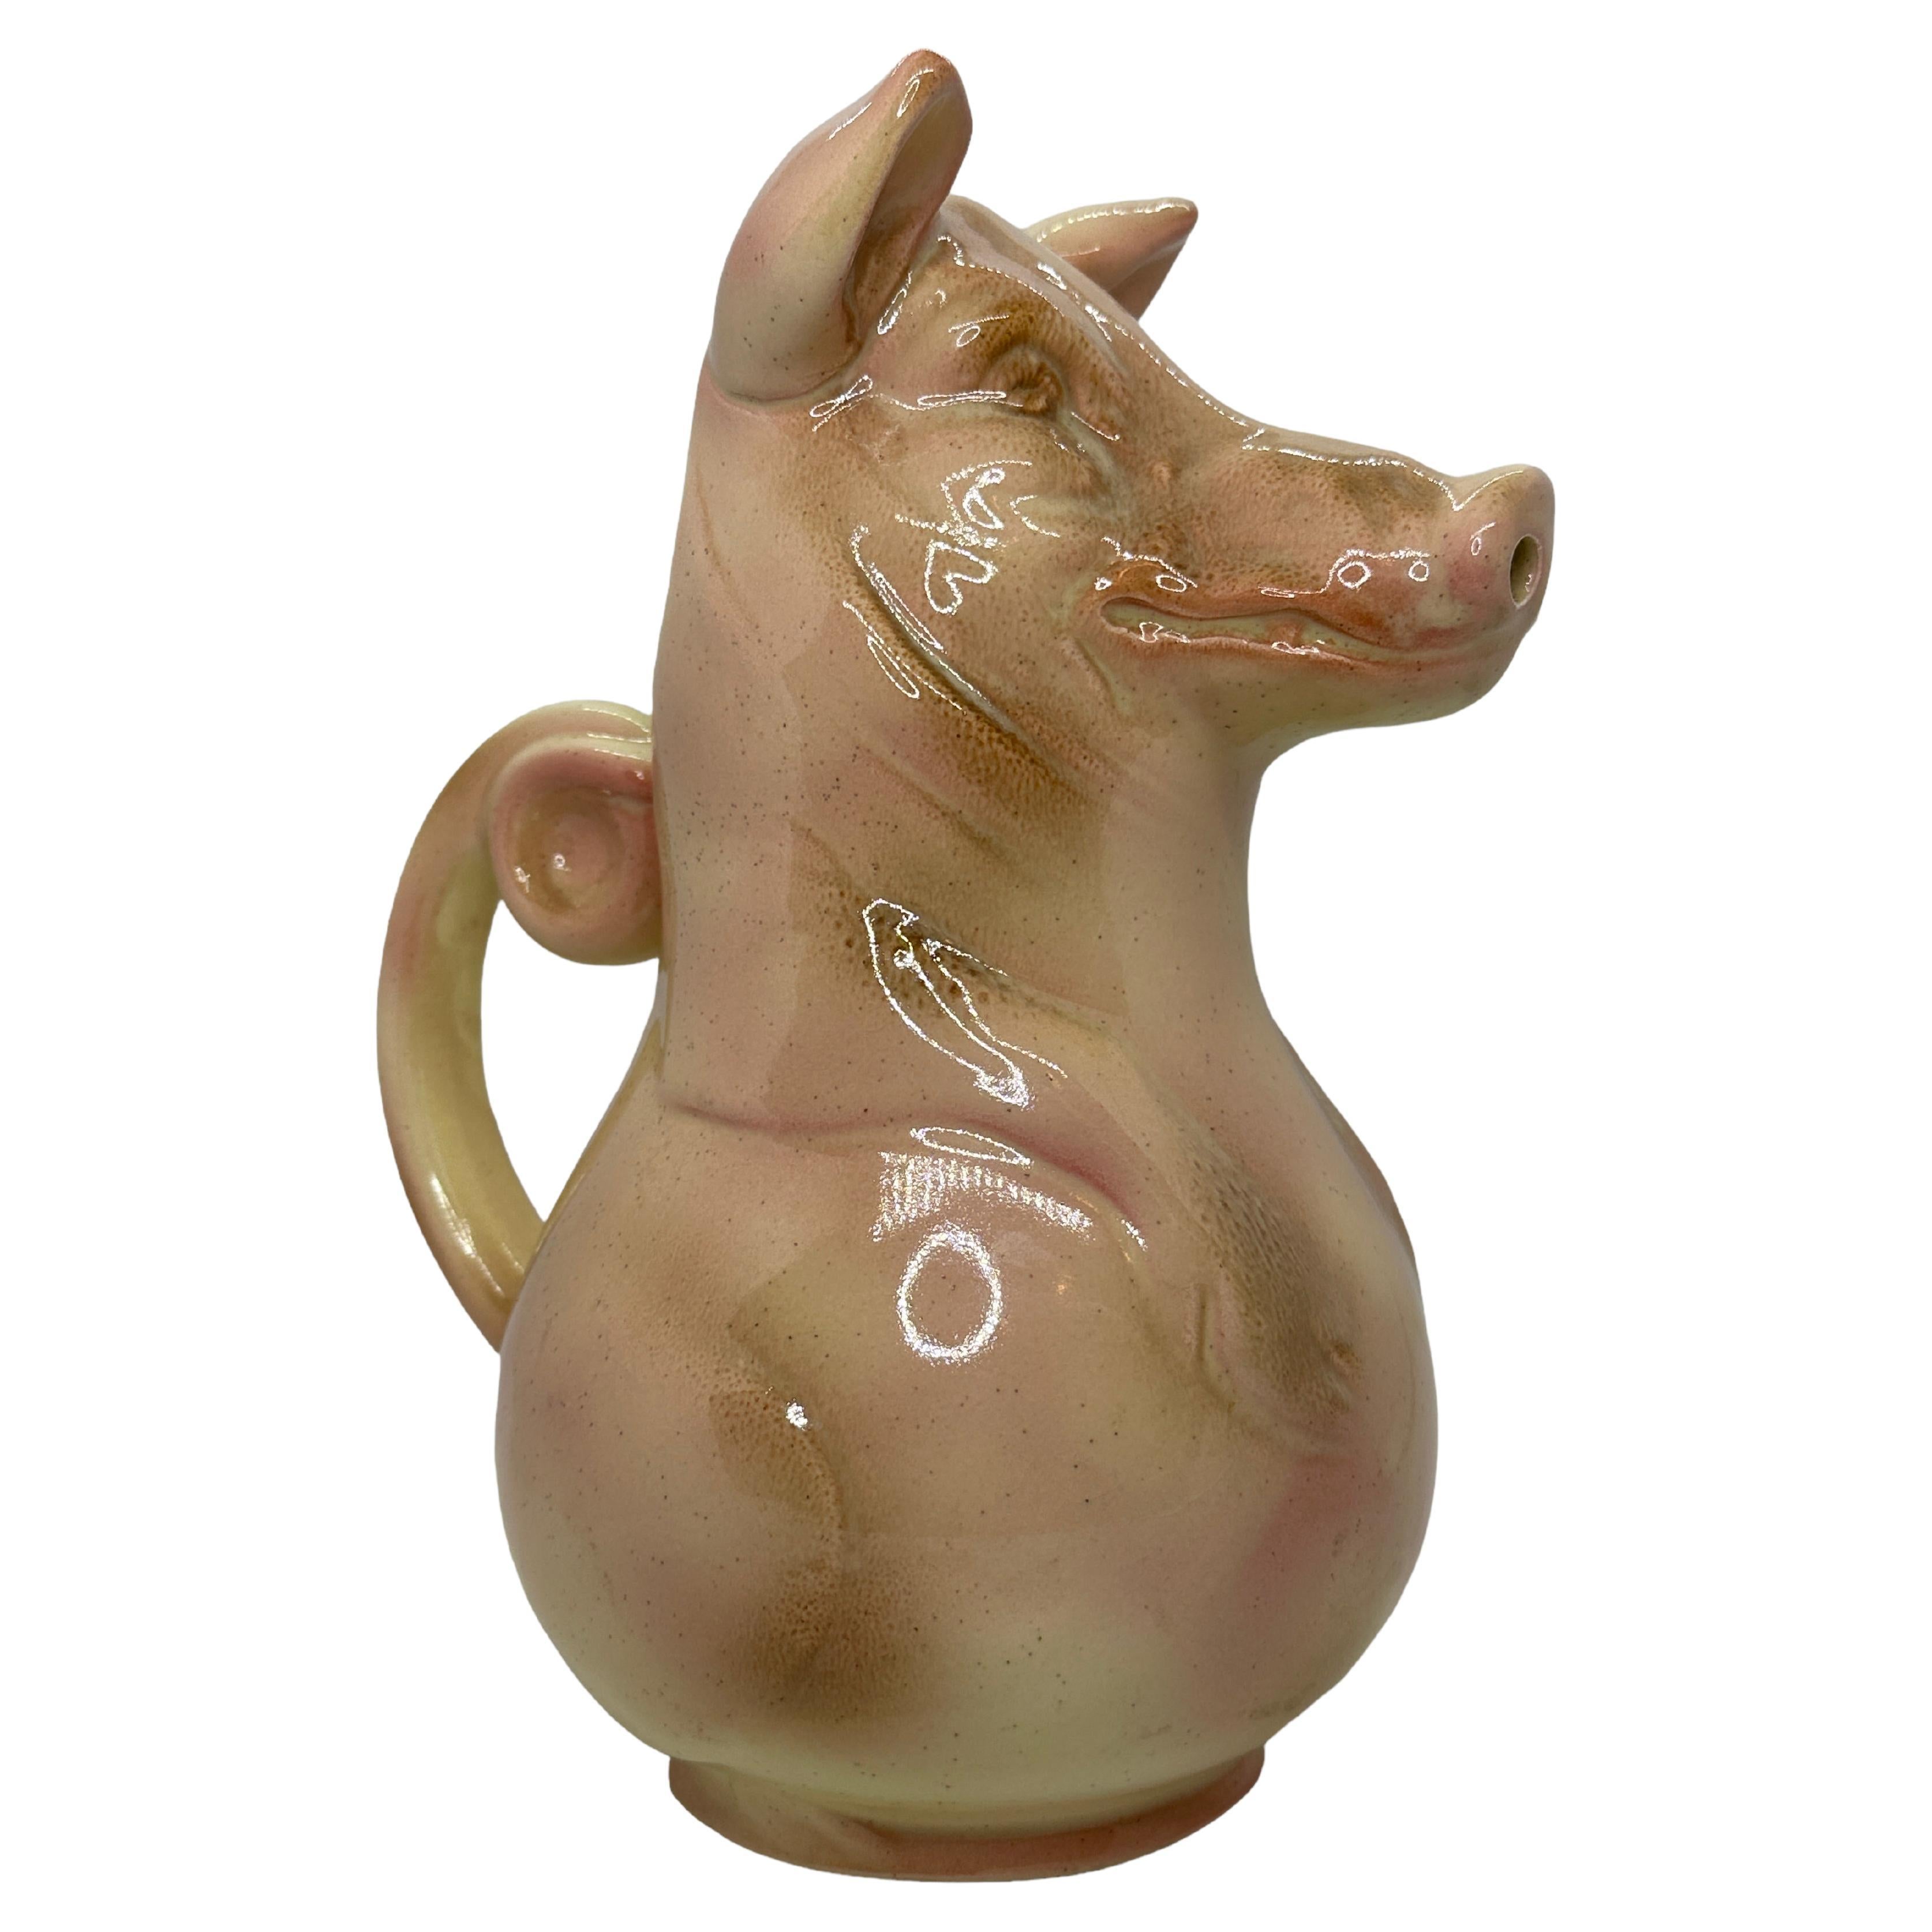 https://a.1stdibscdn.com/sarreguemines-french-majolica-pink-pig-pitcher-vintage-france-for-sale/f_39981/f_321313321673285390037/f_32131332_1673285391639_bg_processed.jpg